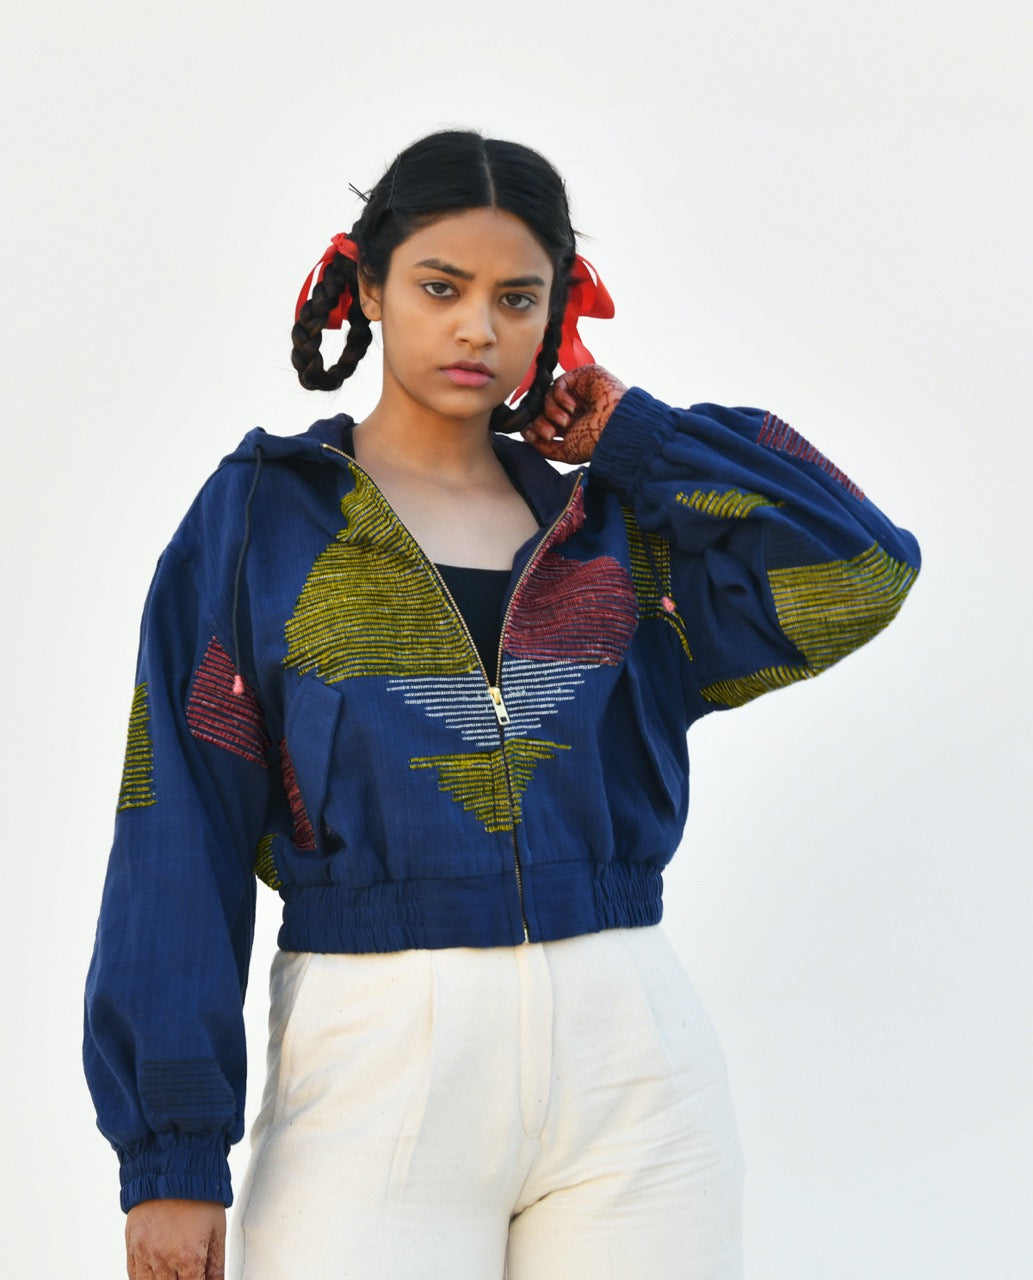 Kuni upcycled fabric hooded jacket